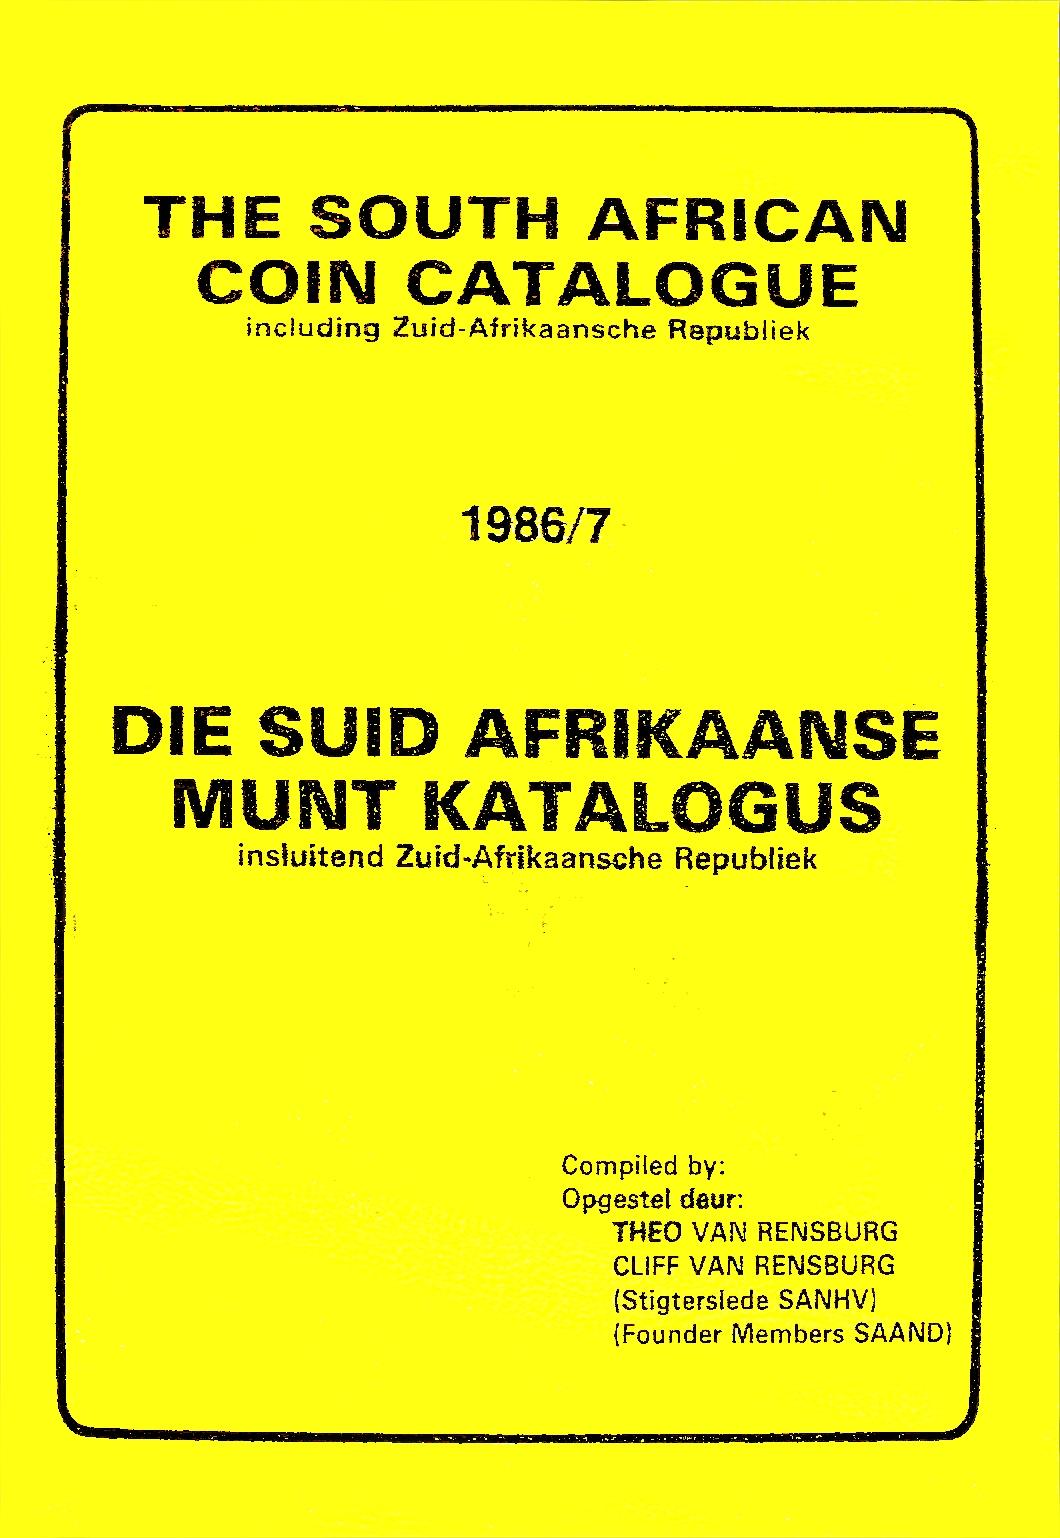 Randburg Coin Catalogue 1986 to 1987